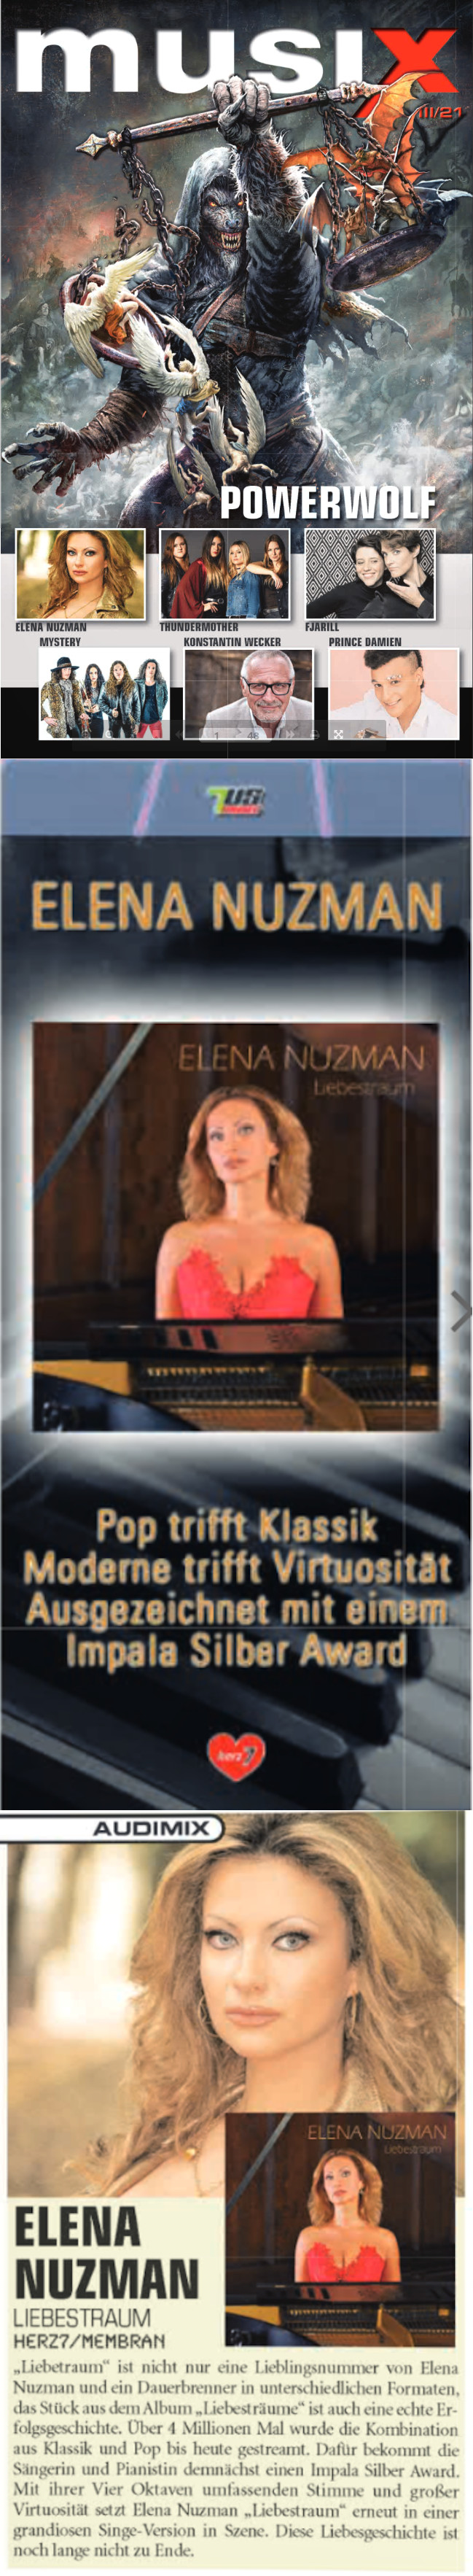 Elena Nuzman - musix.de - epaper - July 2021